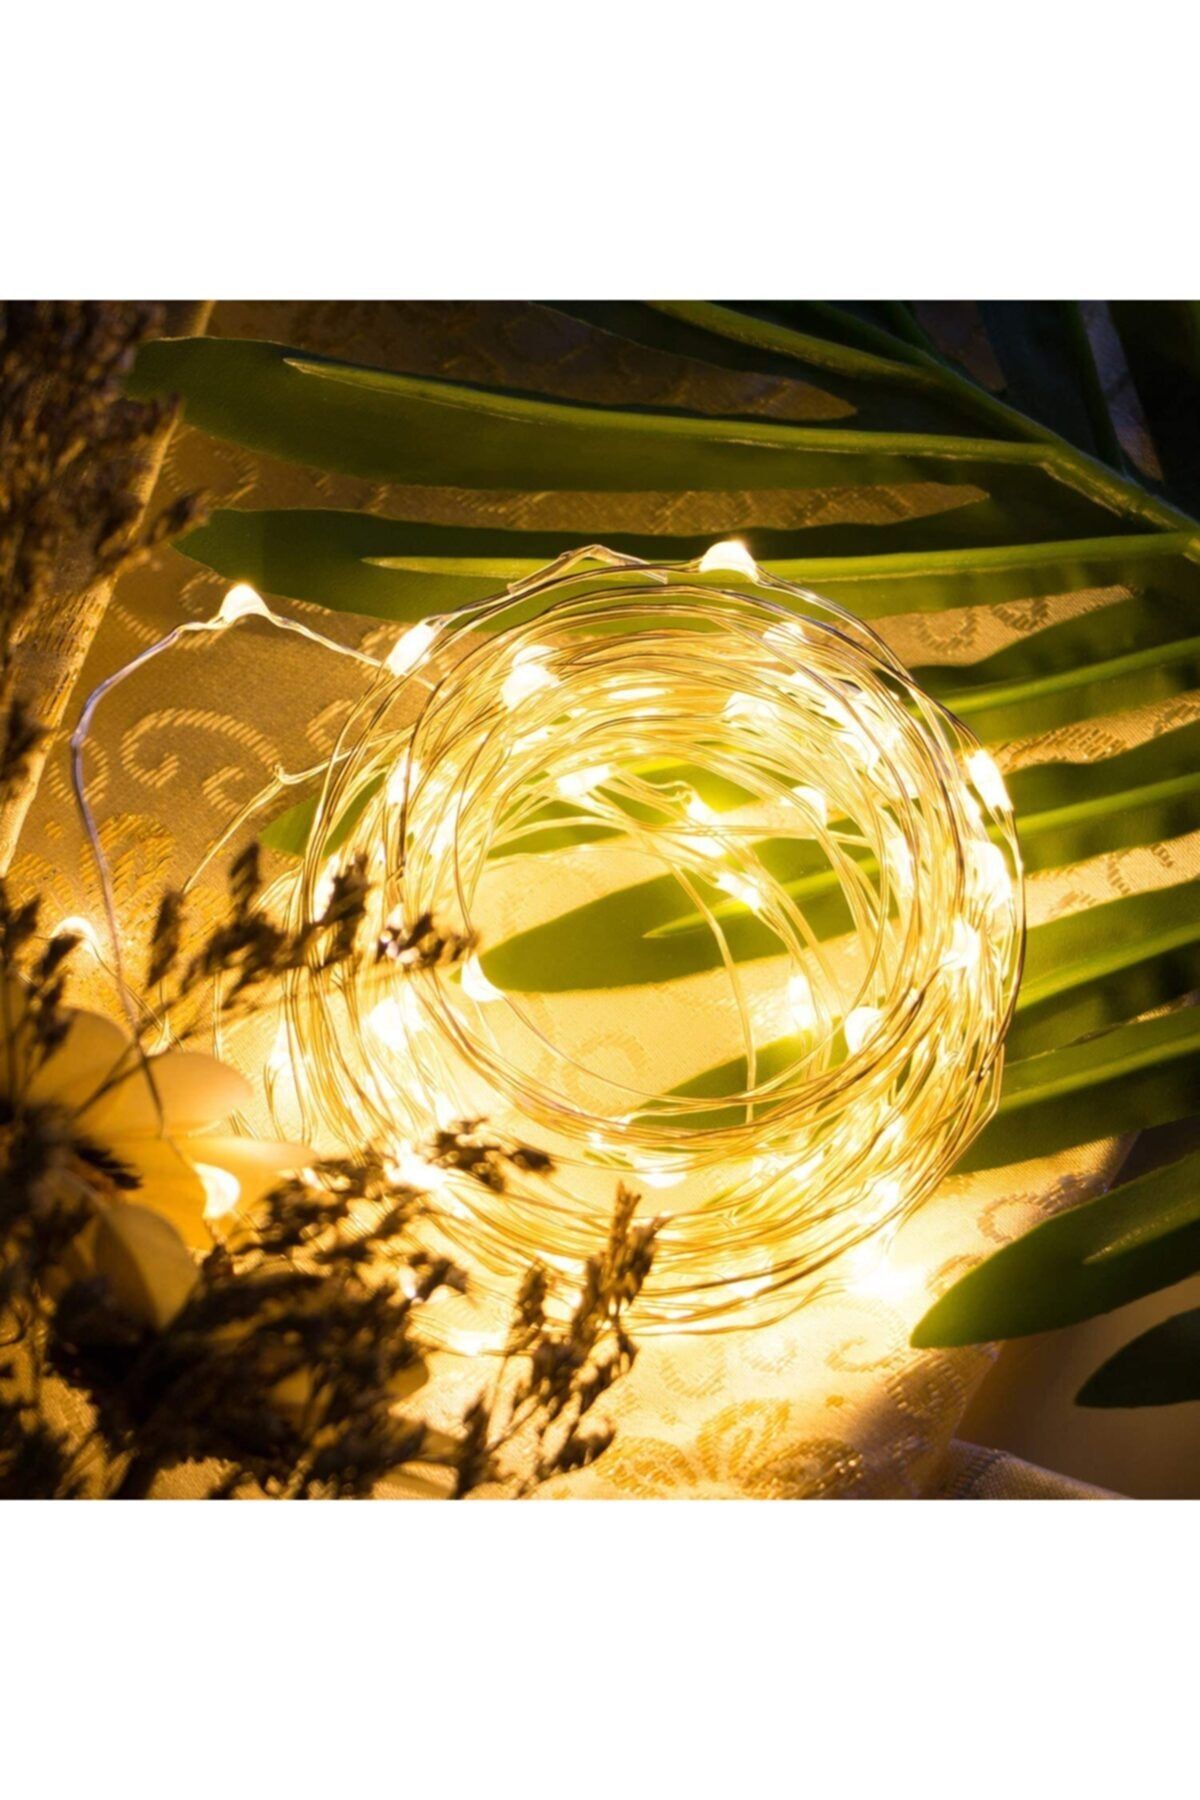 Lumenn Peri Led Işık Pilli 5 Metre Gün Işığı|su Geçirmez Esnek Ve Güçlü Işık Performansı-tel Şerit Led